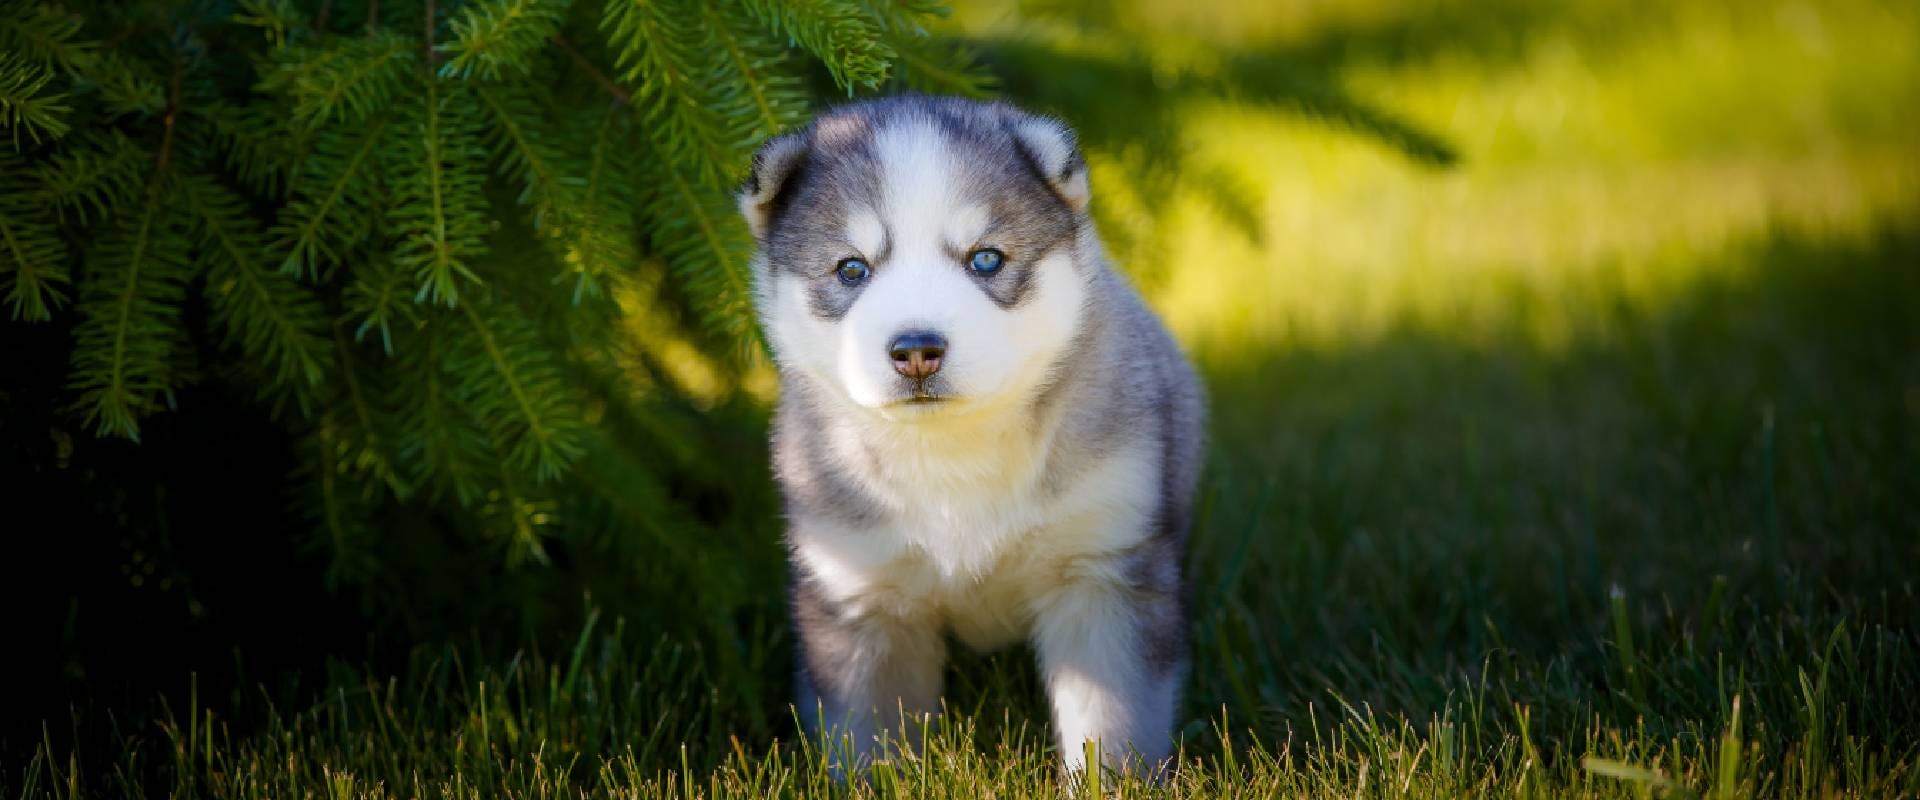 Husky puppy under a tree in a field